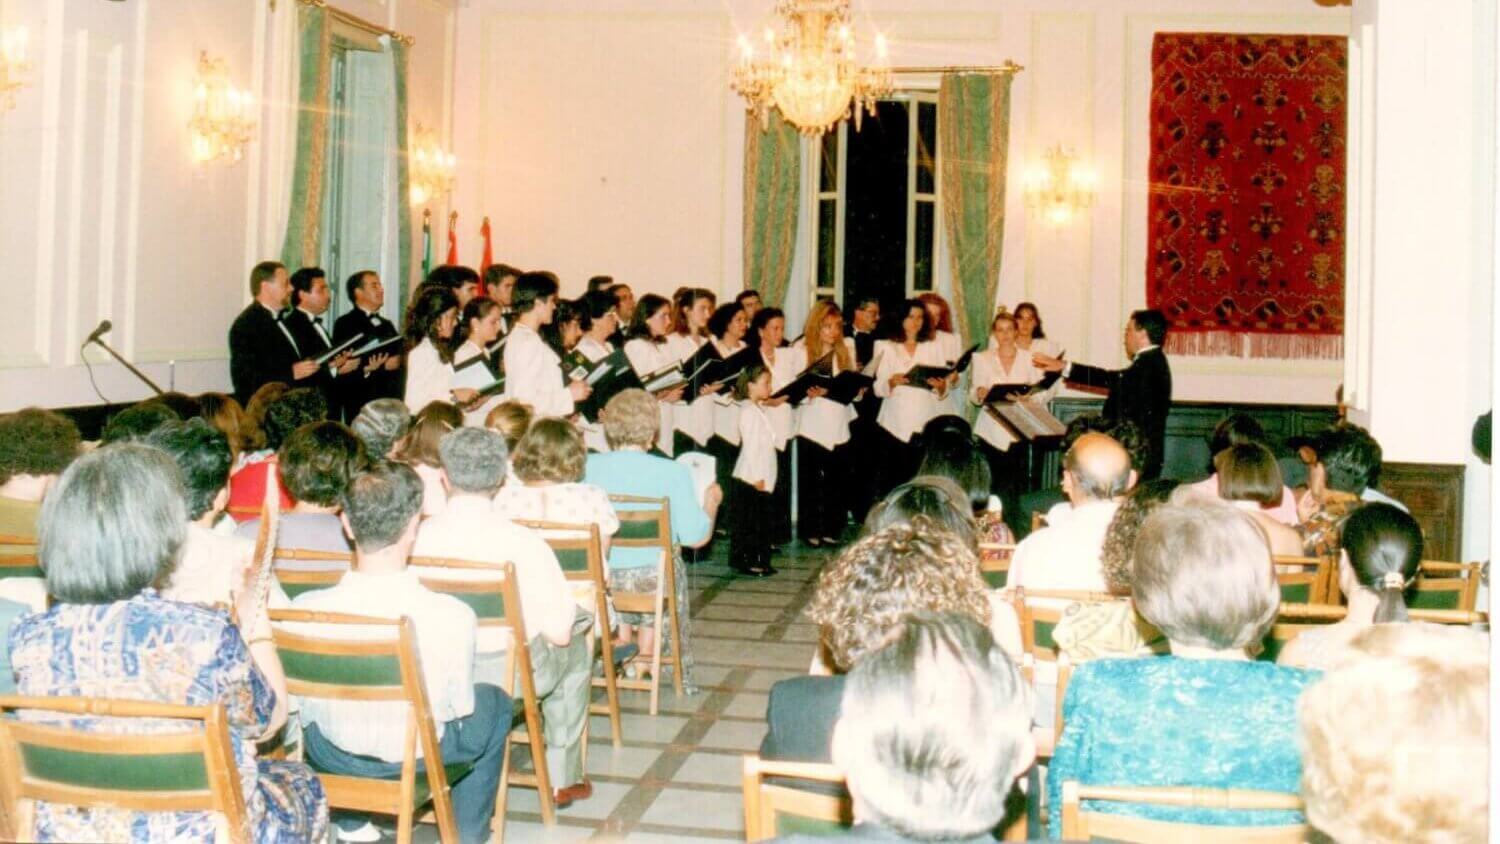 Coro Escuela de Juventudes Musicales 1 edited